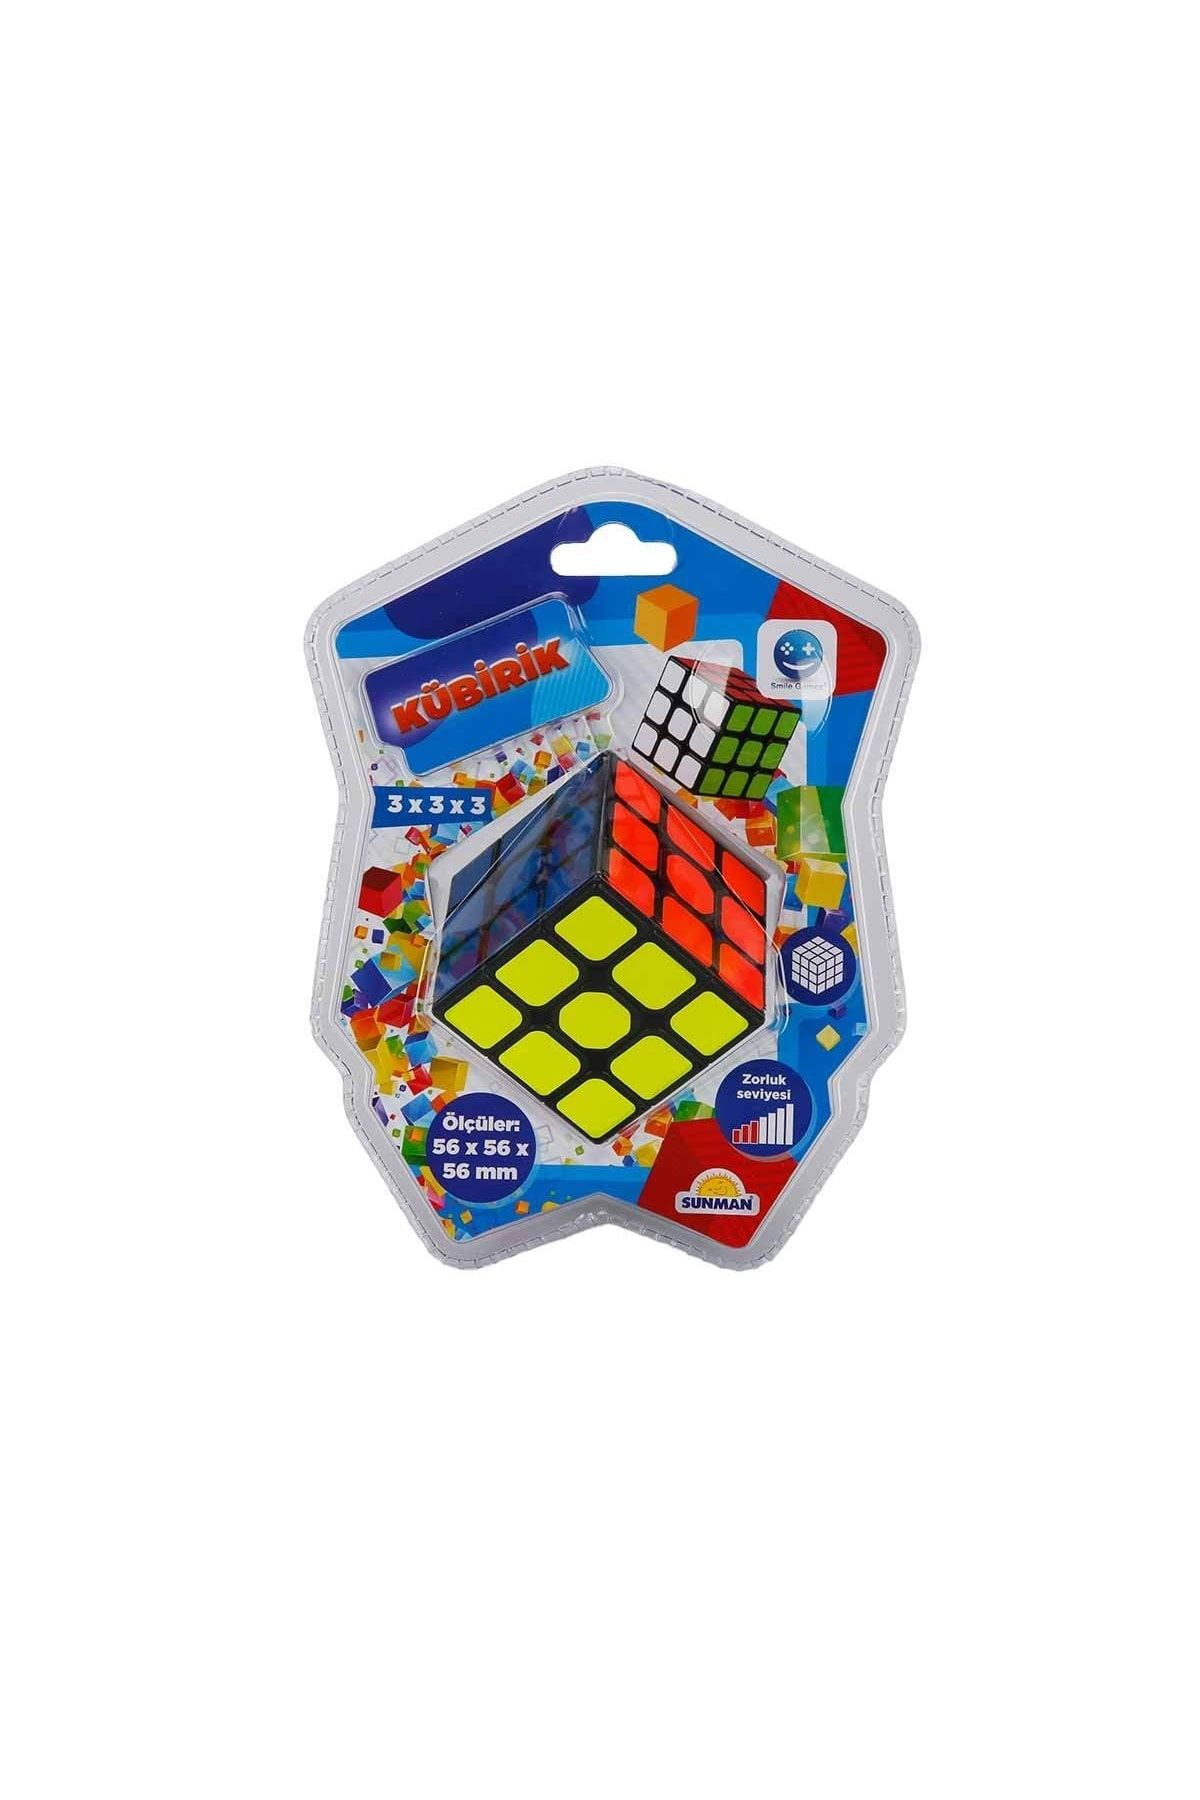 Sunman Smile Games Kübirik 3x3x3 Rubik Akıl Ve Zeka Küpü Oyunu